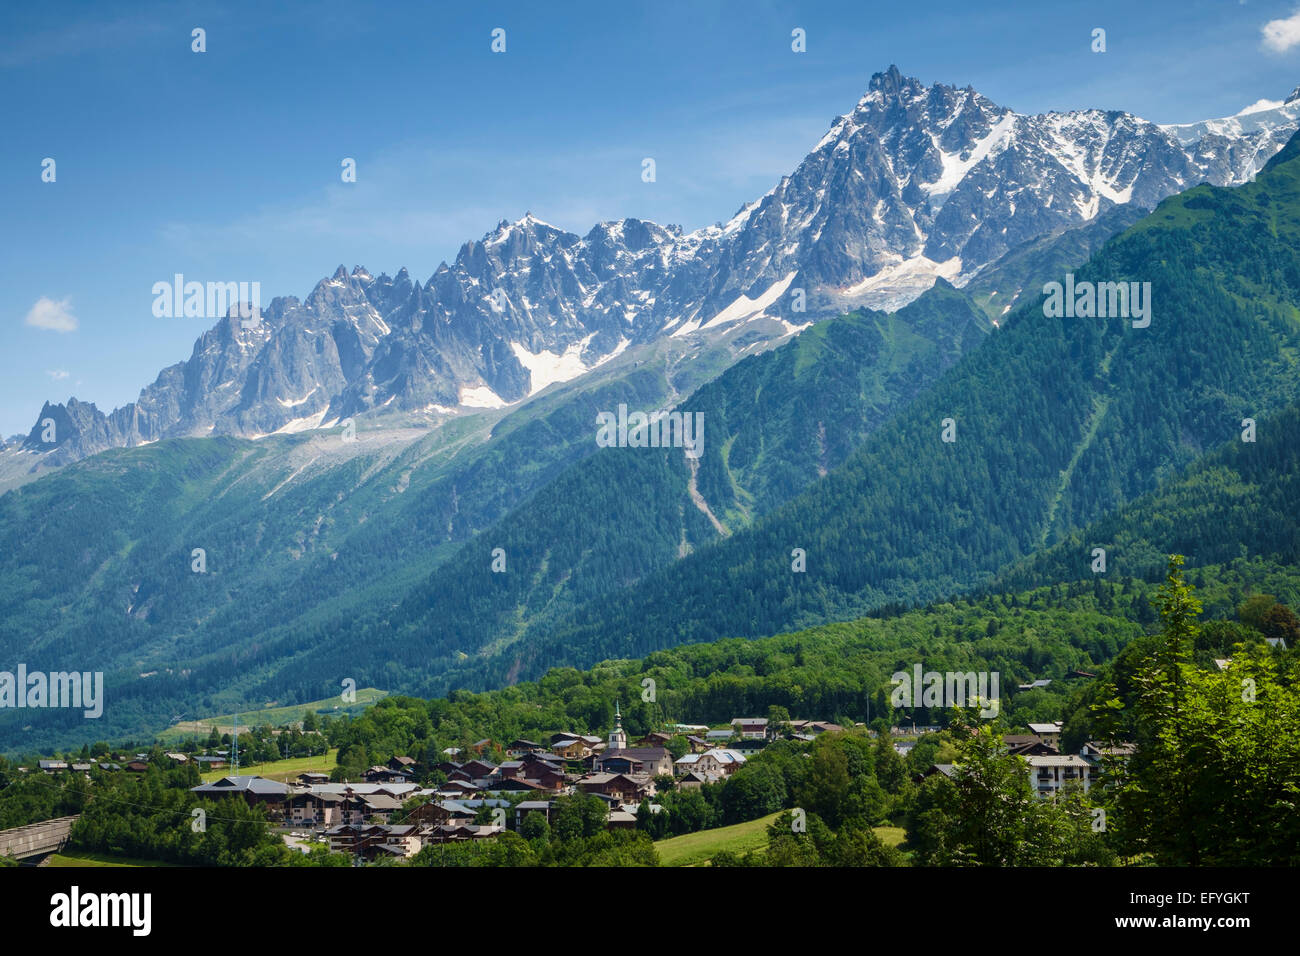 Les Houches villaggio con l'Aiguille du Midi e Aiguilles de Chamonix gamma dietro, Valle di Chamonix, sulle Alpi francesi, Francia, Europa Foto Stock